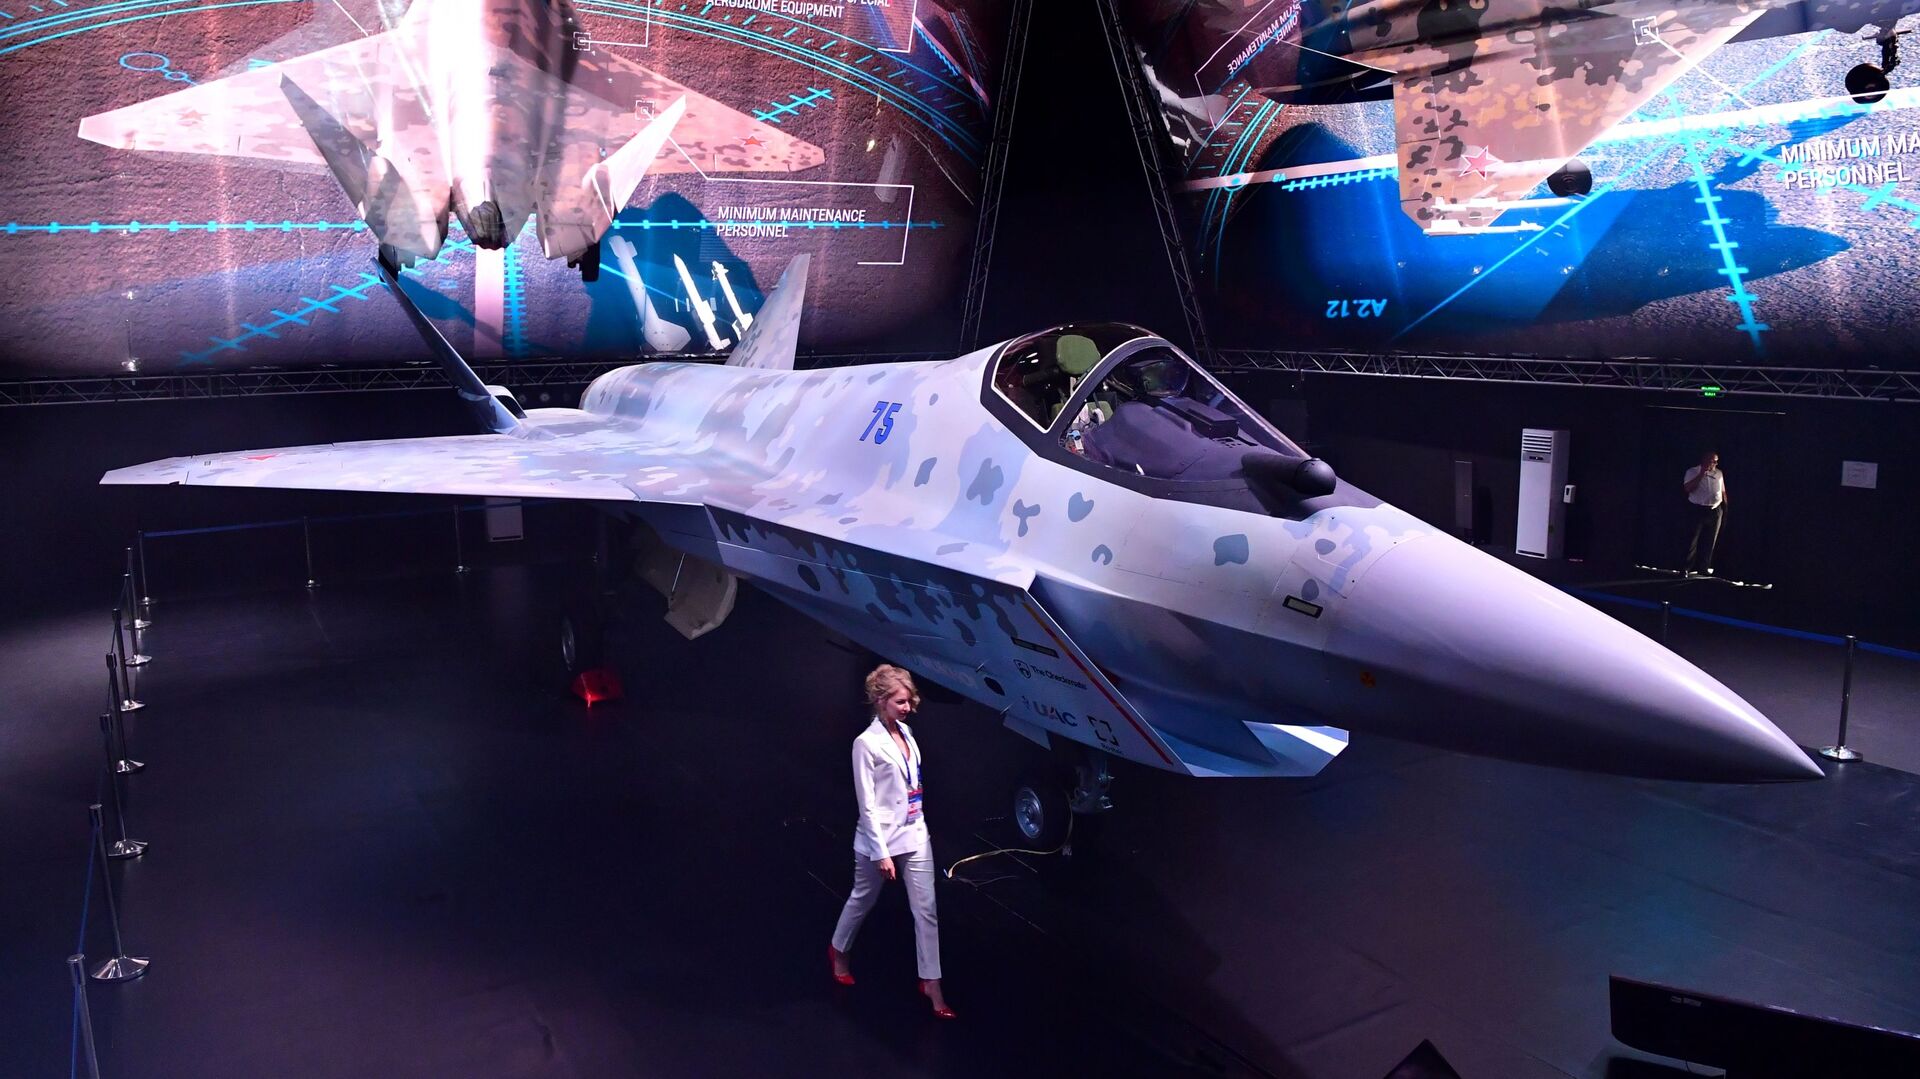 مقاتلة سوخوي تشيك ميت (كش ملك) في معرض الطيران والفضاء الدولي ماكس 2021 في جوكوفسكي، ضواحي موسكو، روسيا 20 يوليو 2021 - سبوتنيك عربي, 1920, 14.11.2021